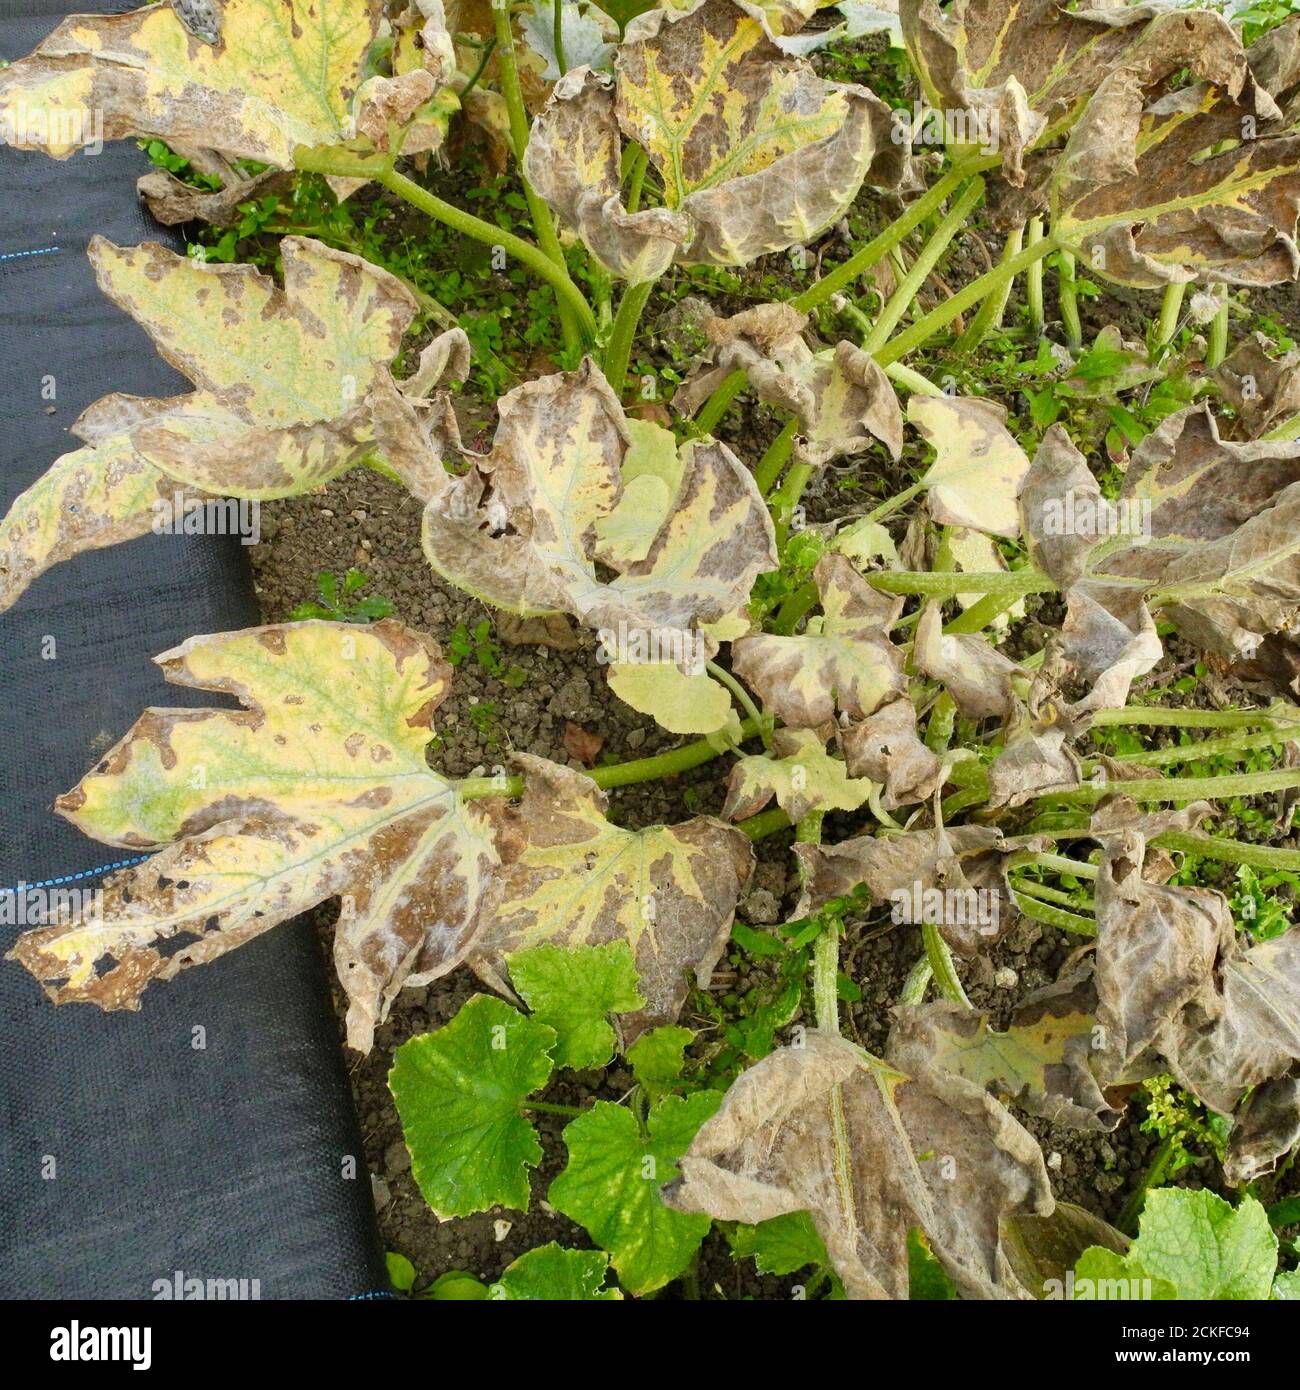 Esta imagen muestra la etapa inicial del mildiú polvoroso que afecta a las hojas de UNA PLANTA de COUGETTE. El mildiú polvoriento es una enfermedad micótica que afecta a una amplia gama de plantas. Las enfermedades del mildiú polvoriento son causadas por muchas especies diferentes de hongos en el orden Erysiphales, siendo Potoshaera xanthii la causa más comúnmente reportada. Común en CALABAZAS PEPINOS CALABAZAS CALABAZAS y otros miembros de la familia DE LAS CALABAZAS. Foto de stock